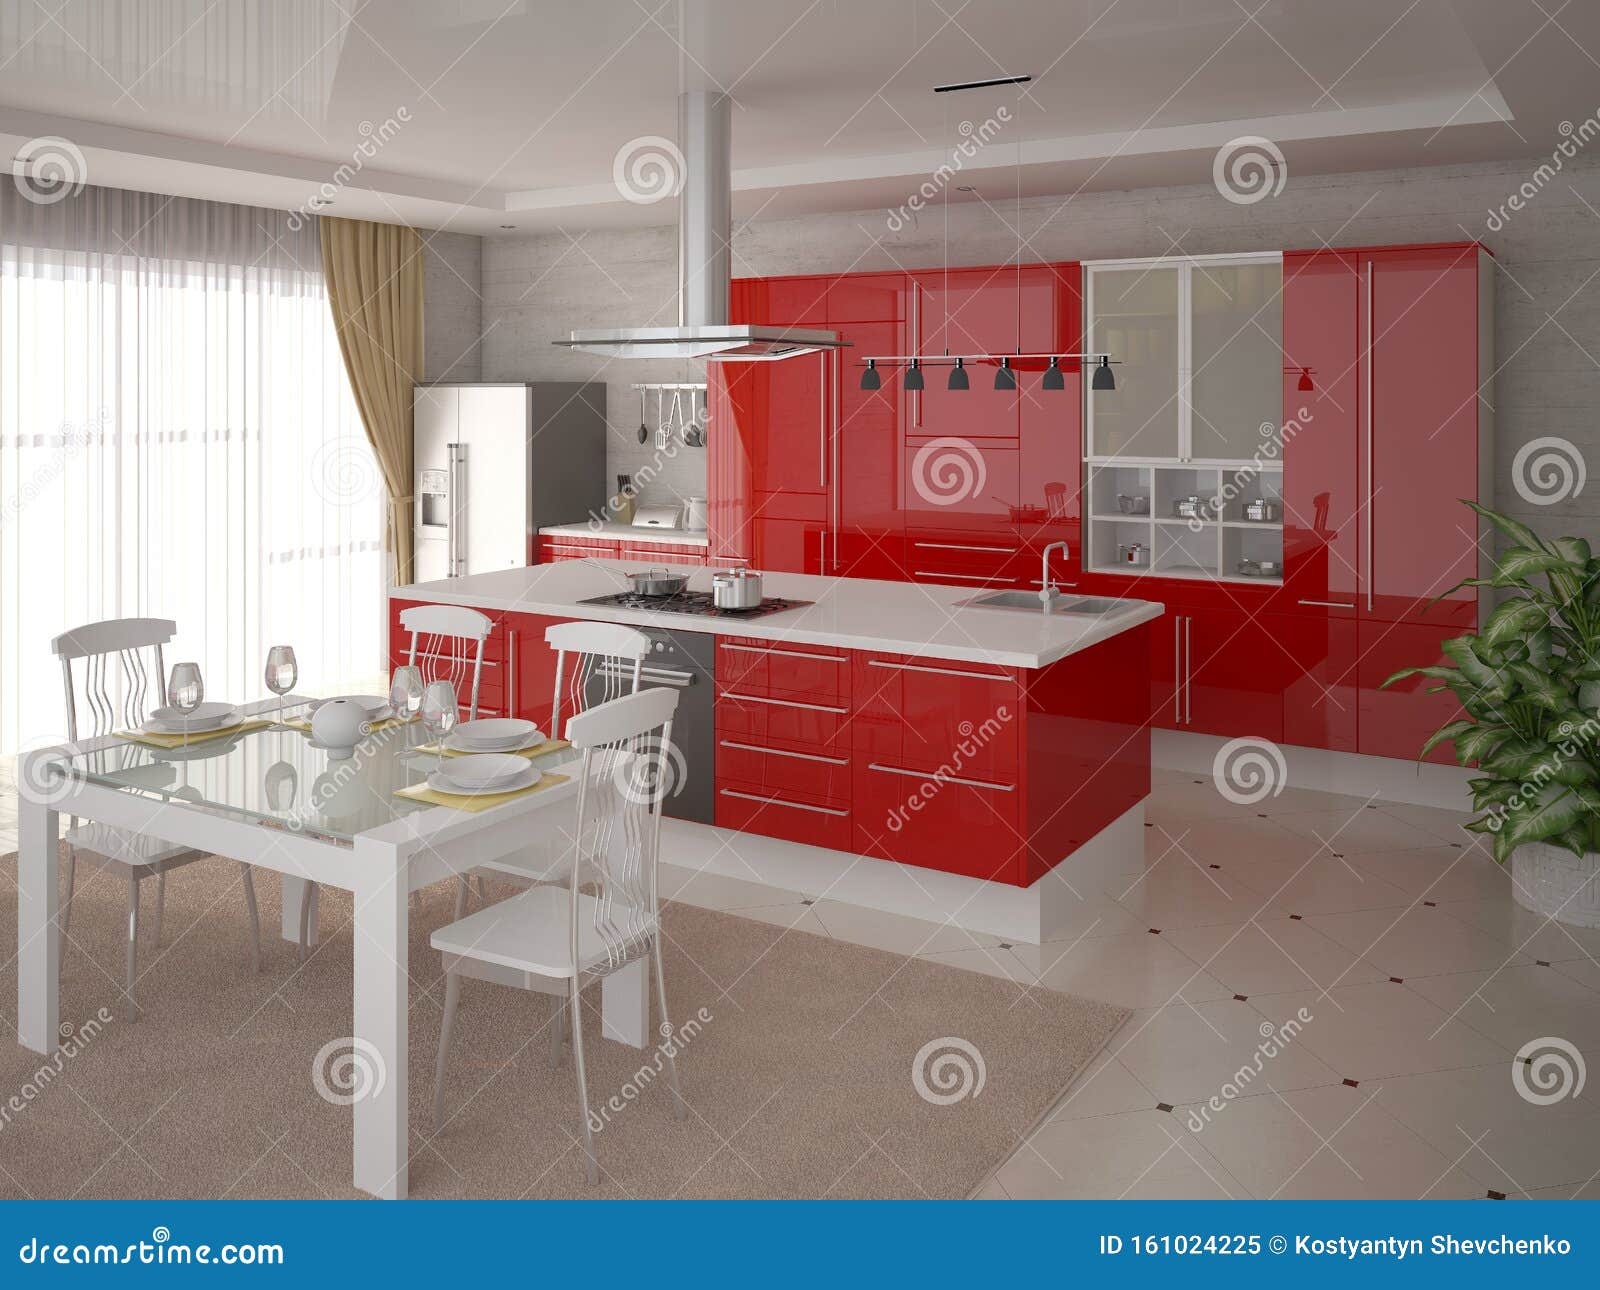 Cocina Moderna Y Elegante Con Muebles Modernos Y Funcionales Stock De Ilustracion Ilustracion De Modernos Funcionales 161024225